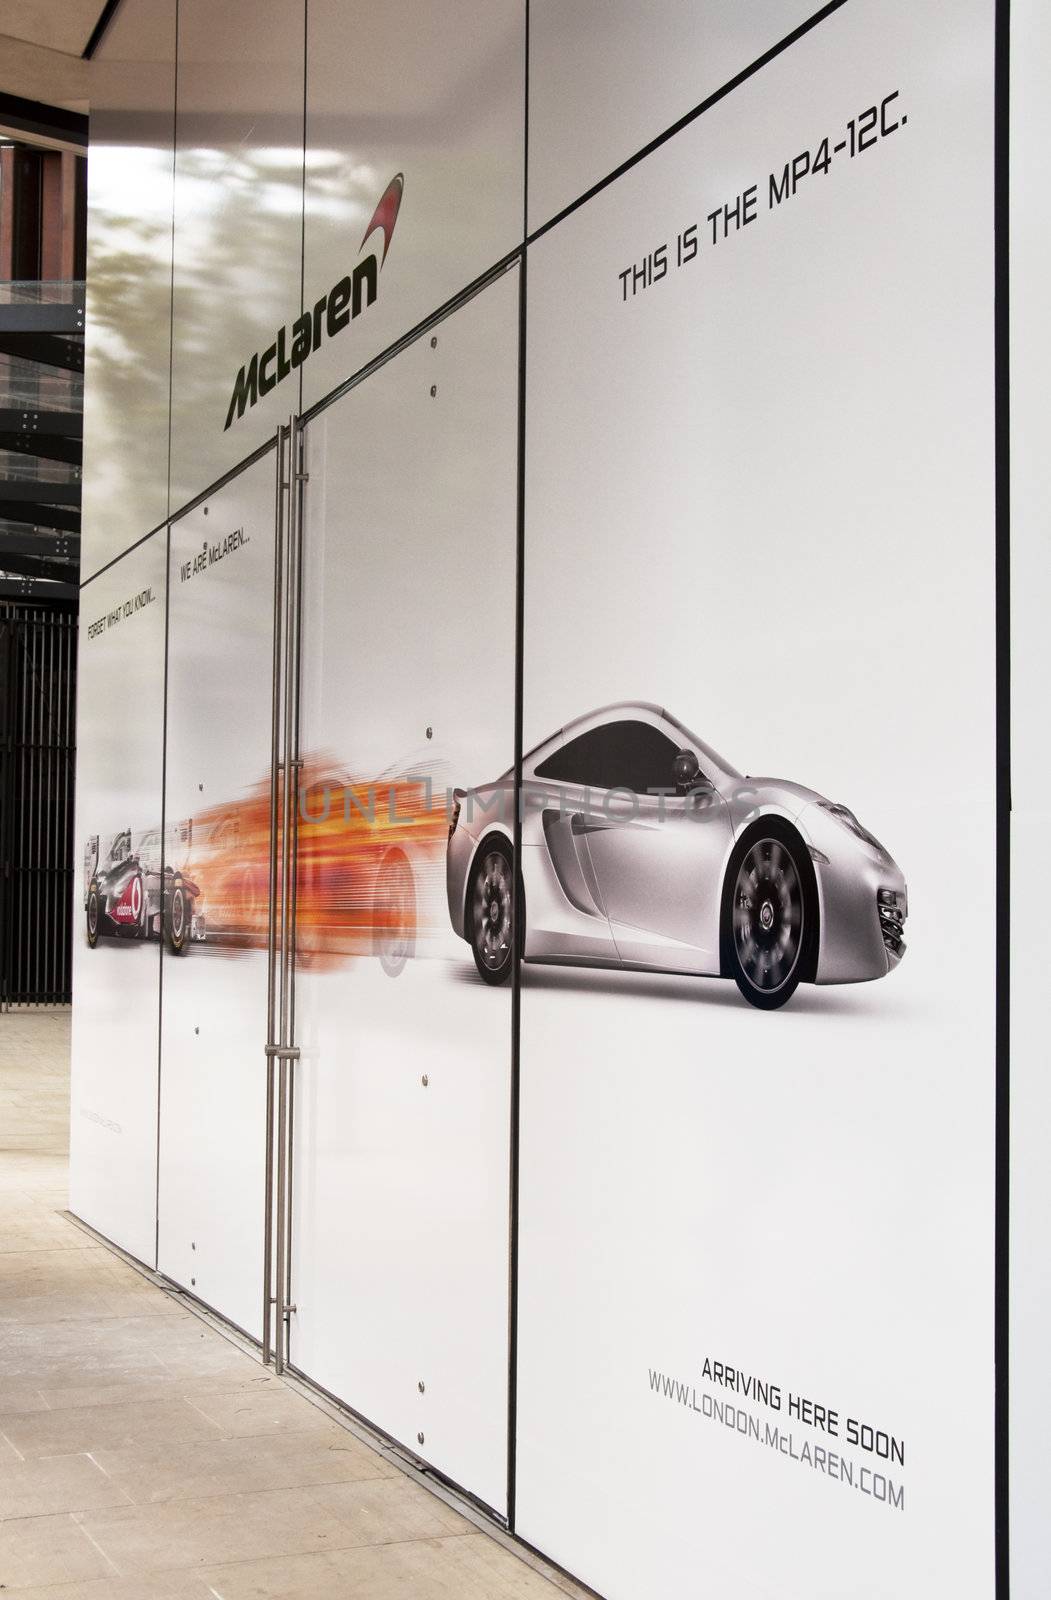 The McLaren showroom in London due to open in summer 2011